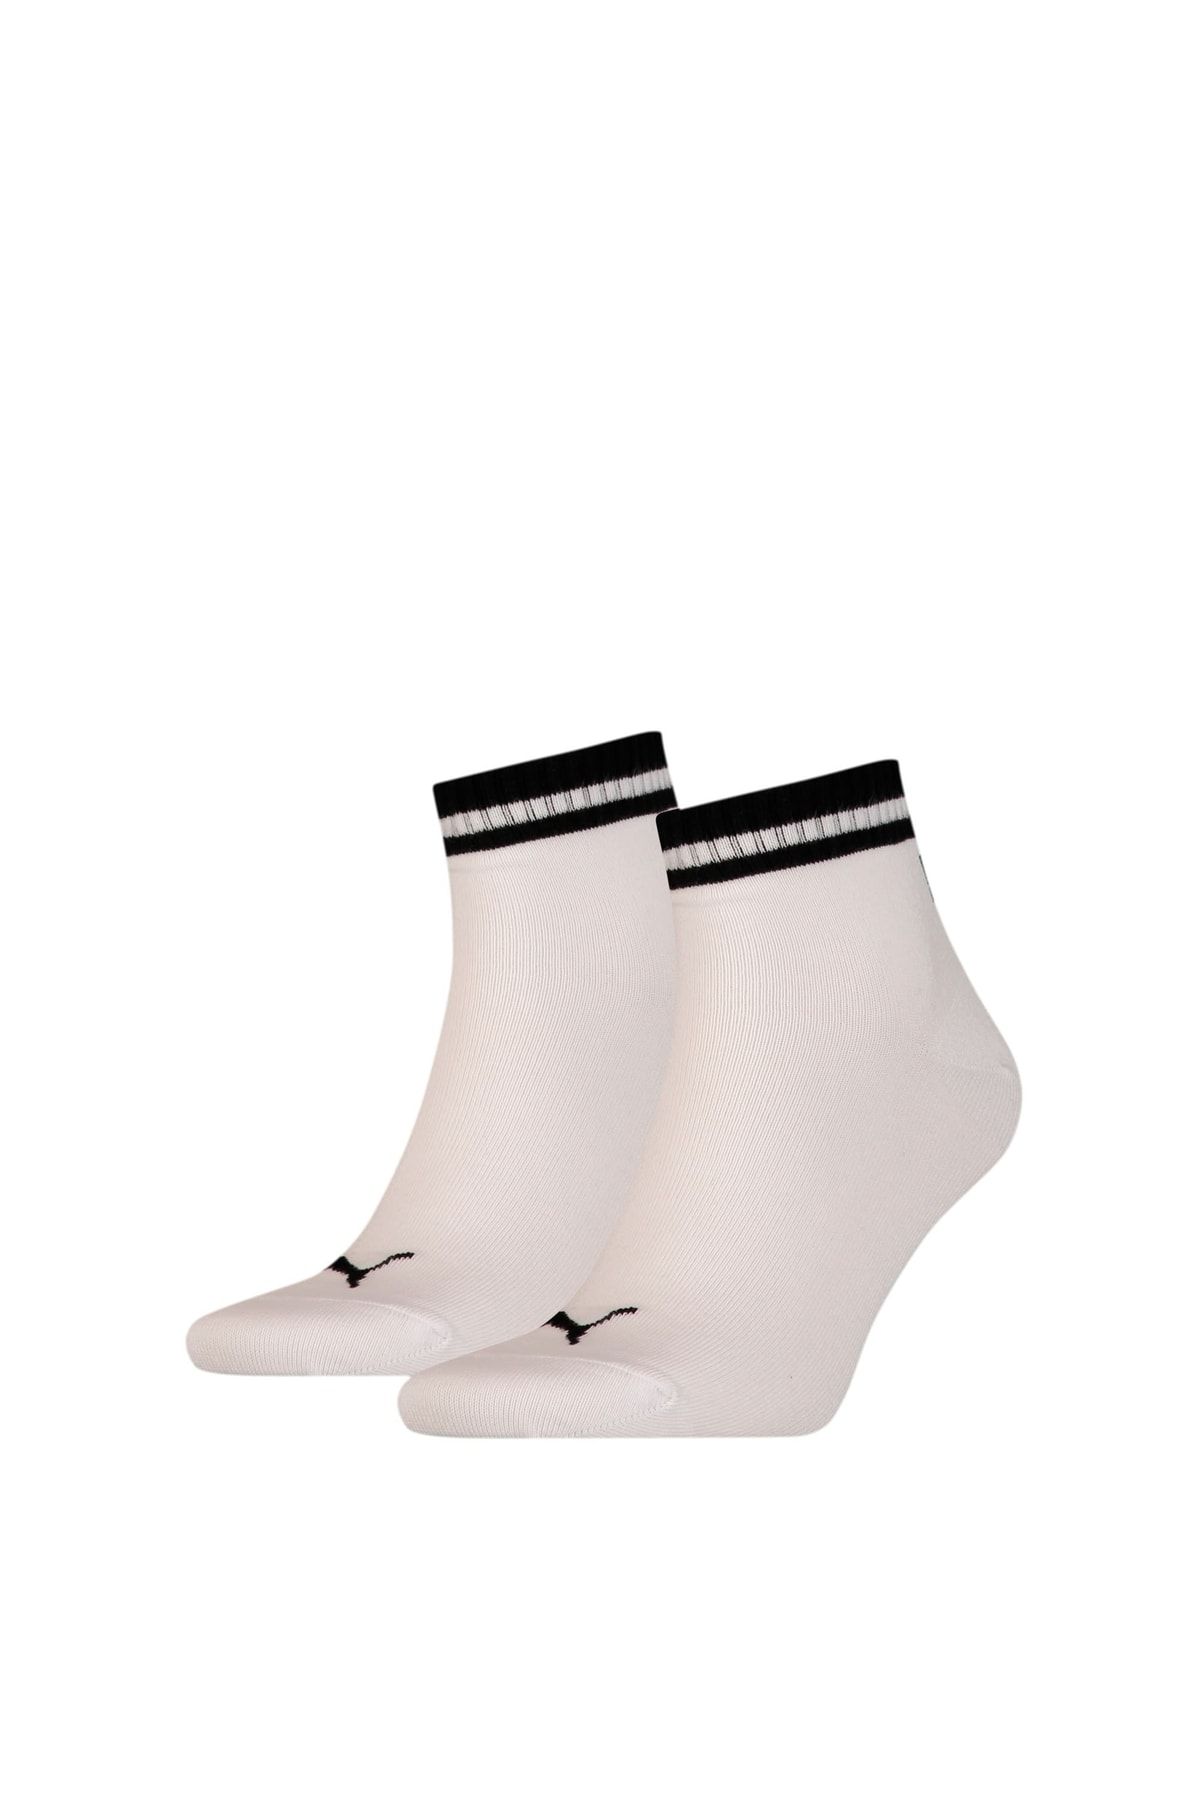 Puma Herıtage Bilek Boy Çorap (2'li Paket)